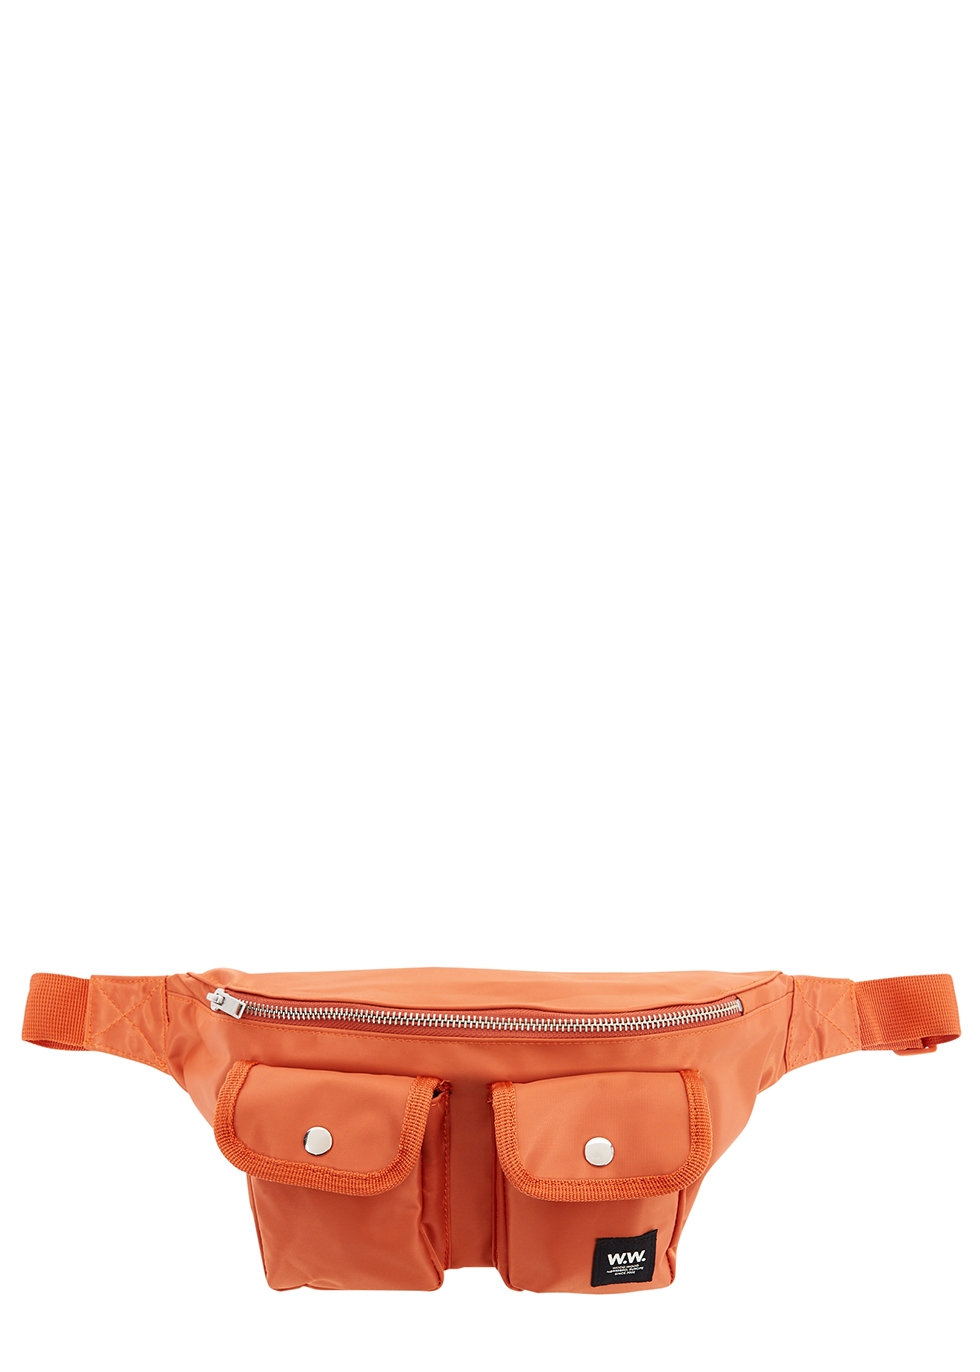 Gray orange nylon belt bag